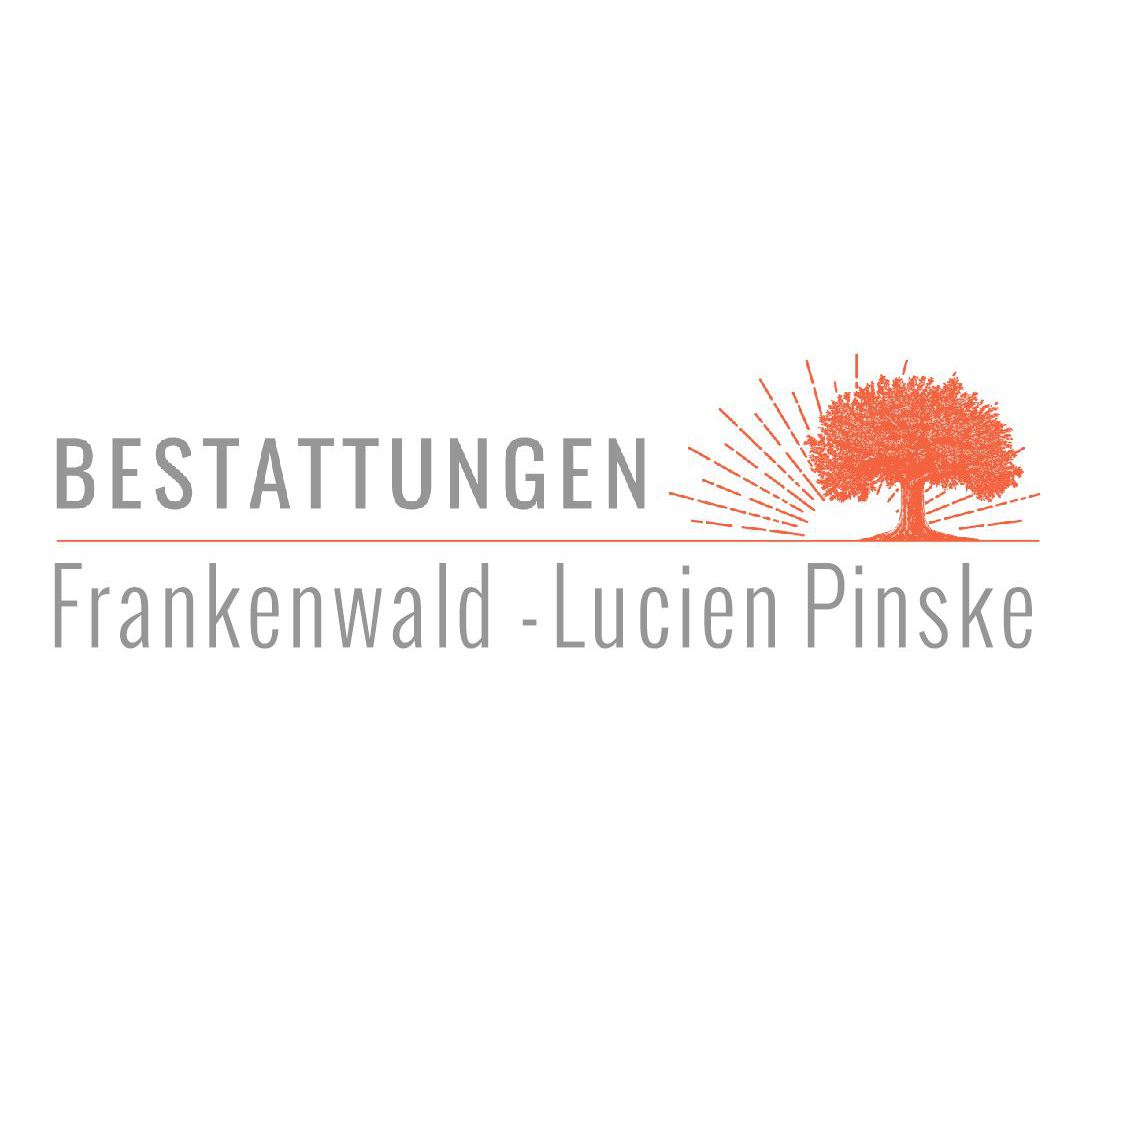 Pinske Lucien Bestattungen Frankenwald Logo